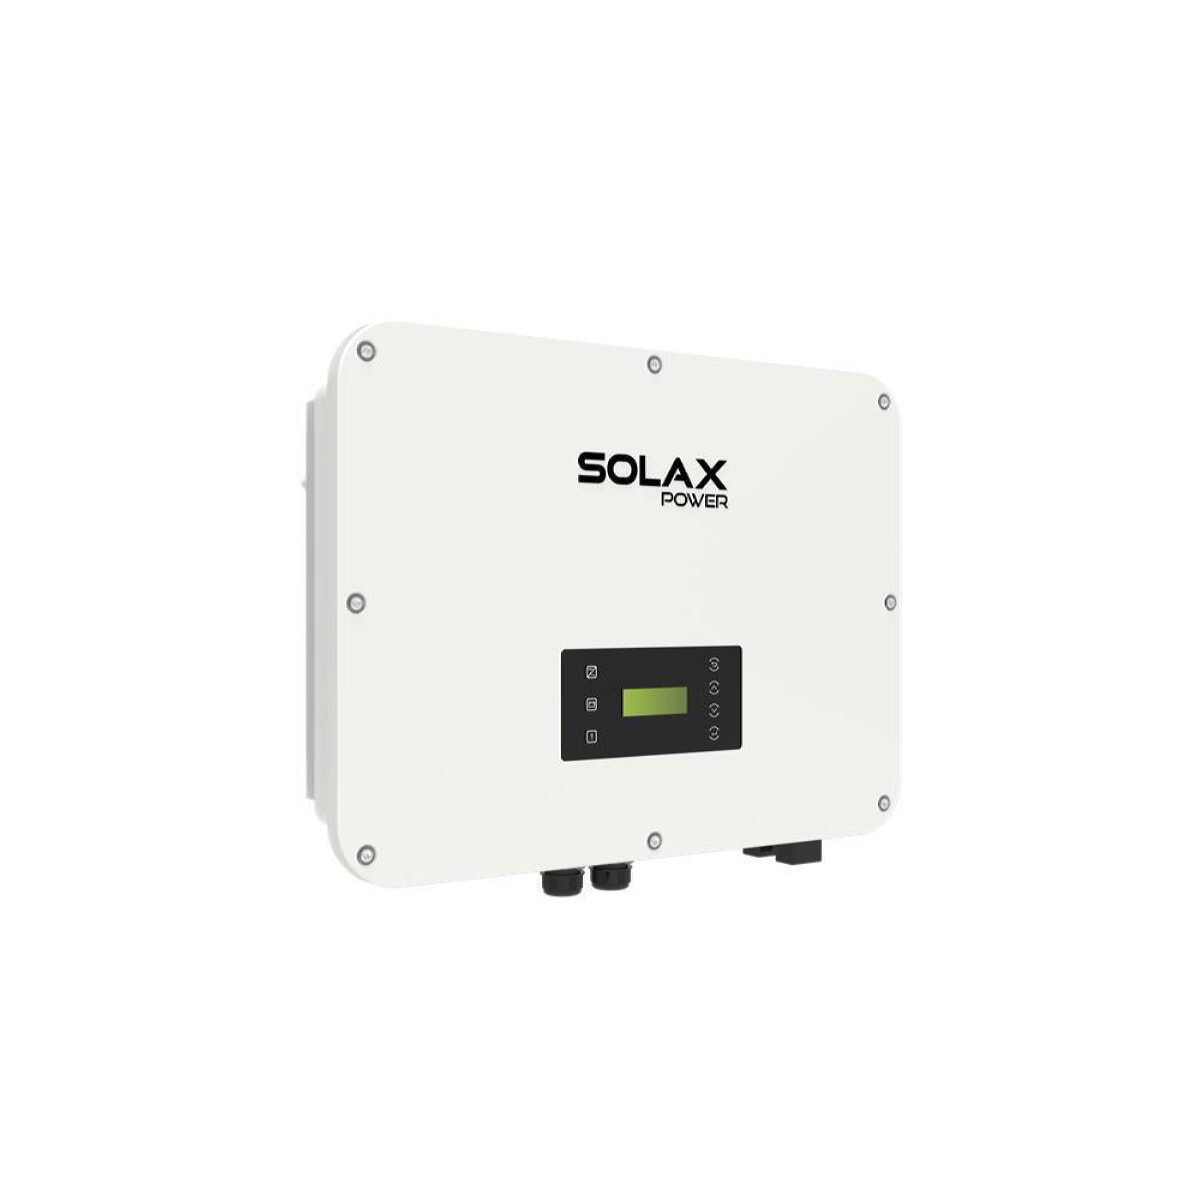 SolaX X3 Ultra 20K three-phase hybrid inverter